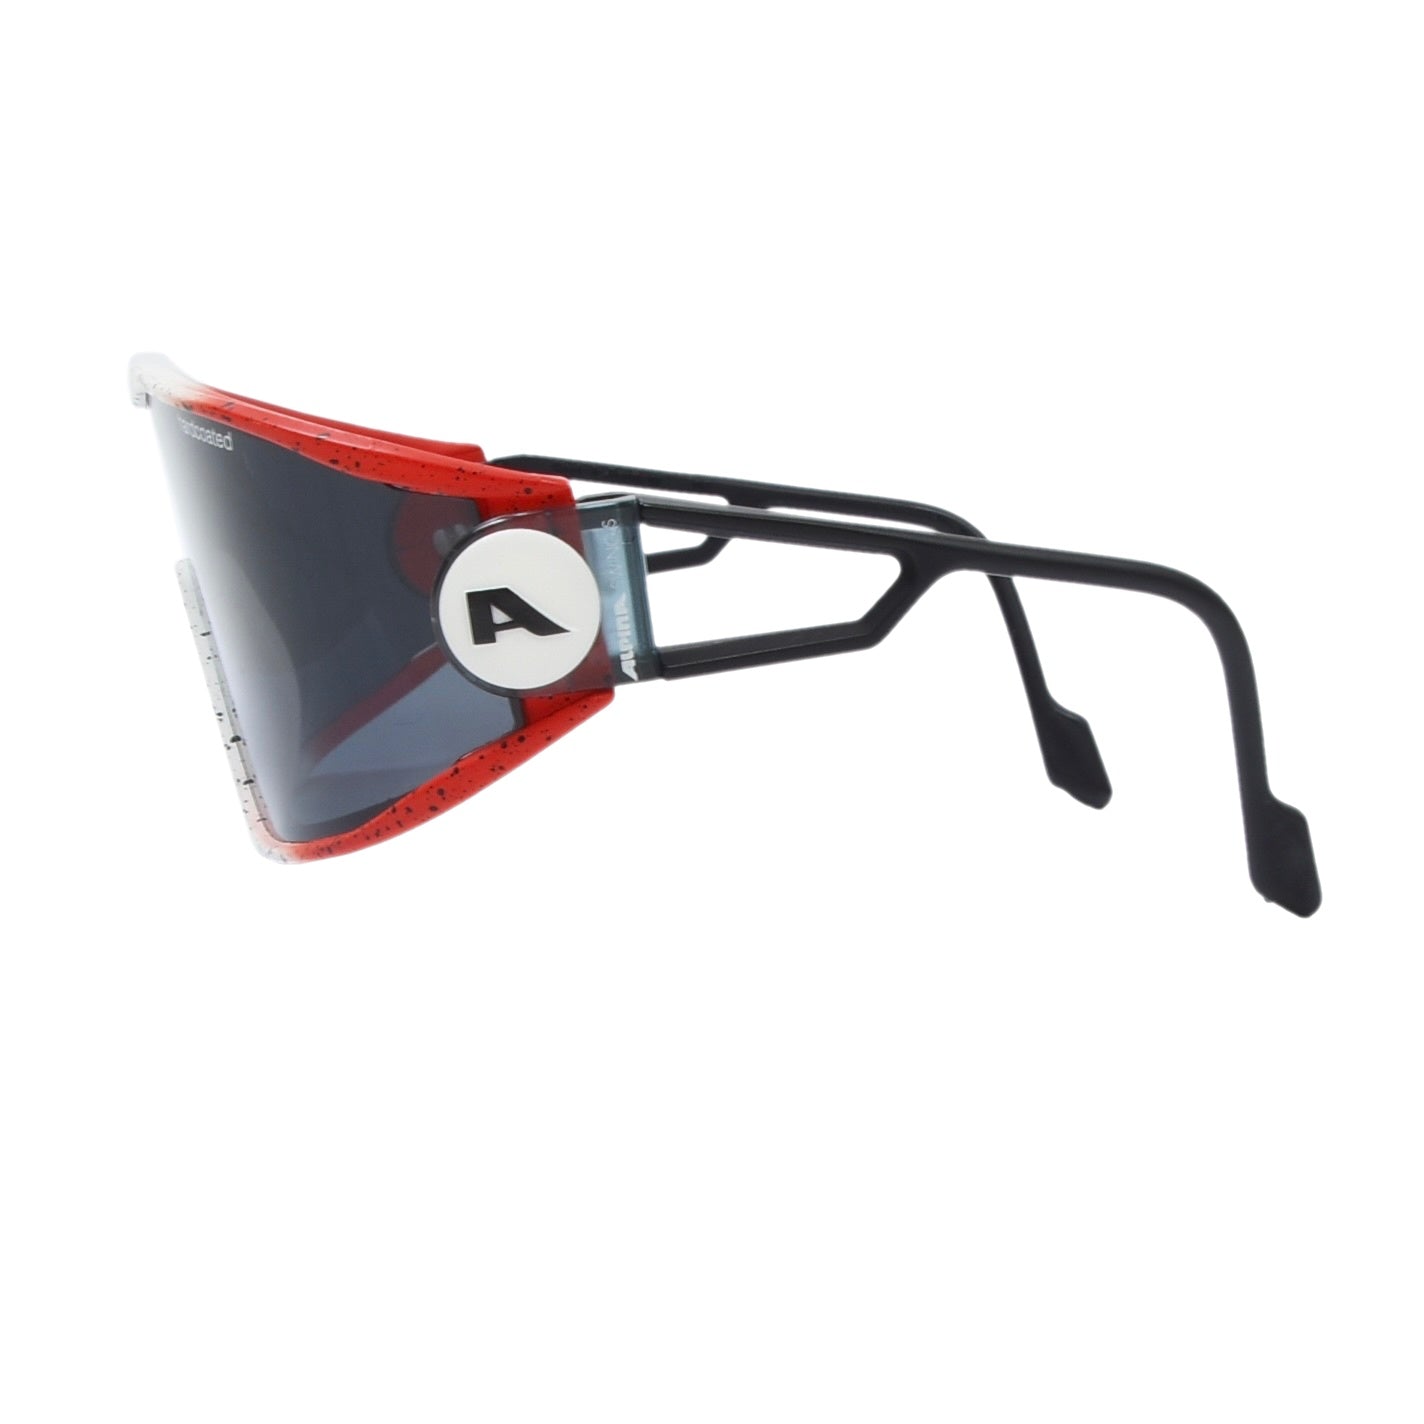 Alpina Swing Shield S Sunglasses - Red & White